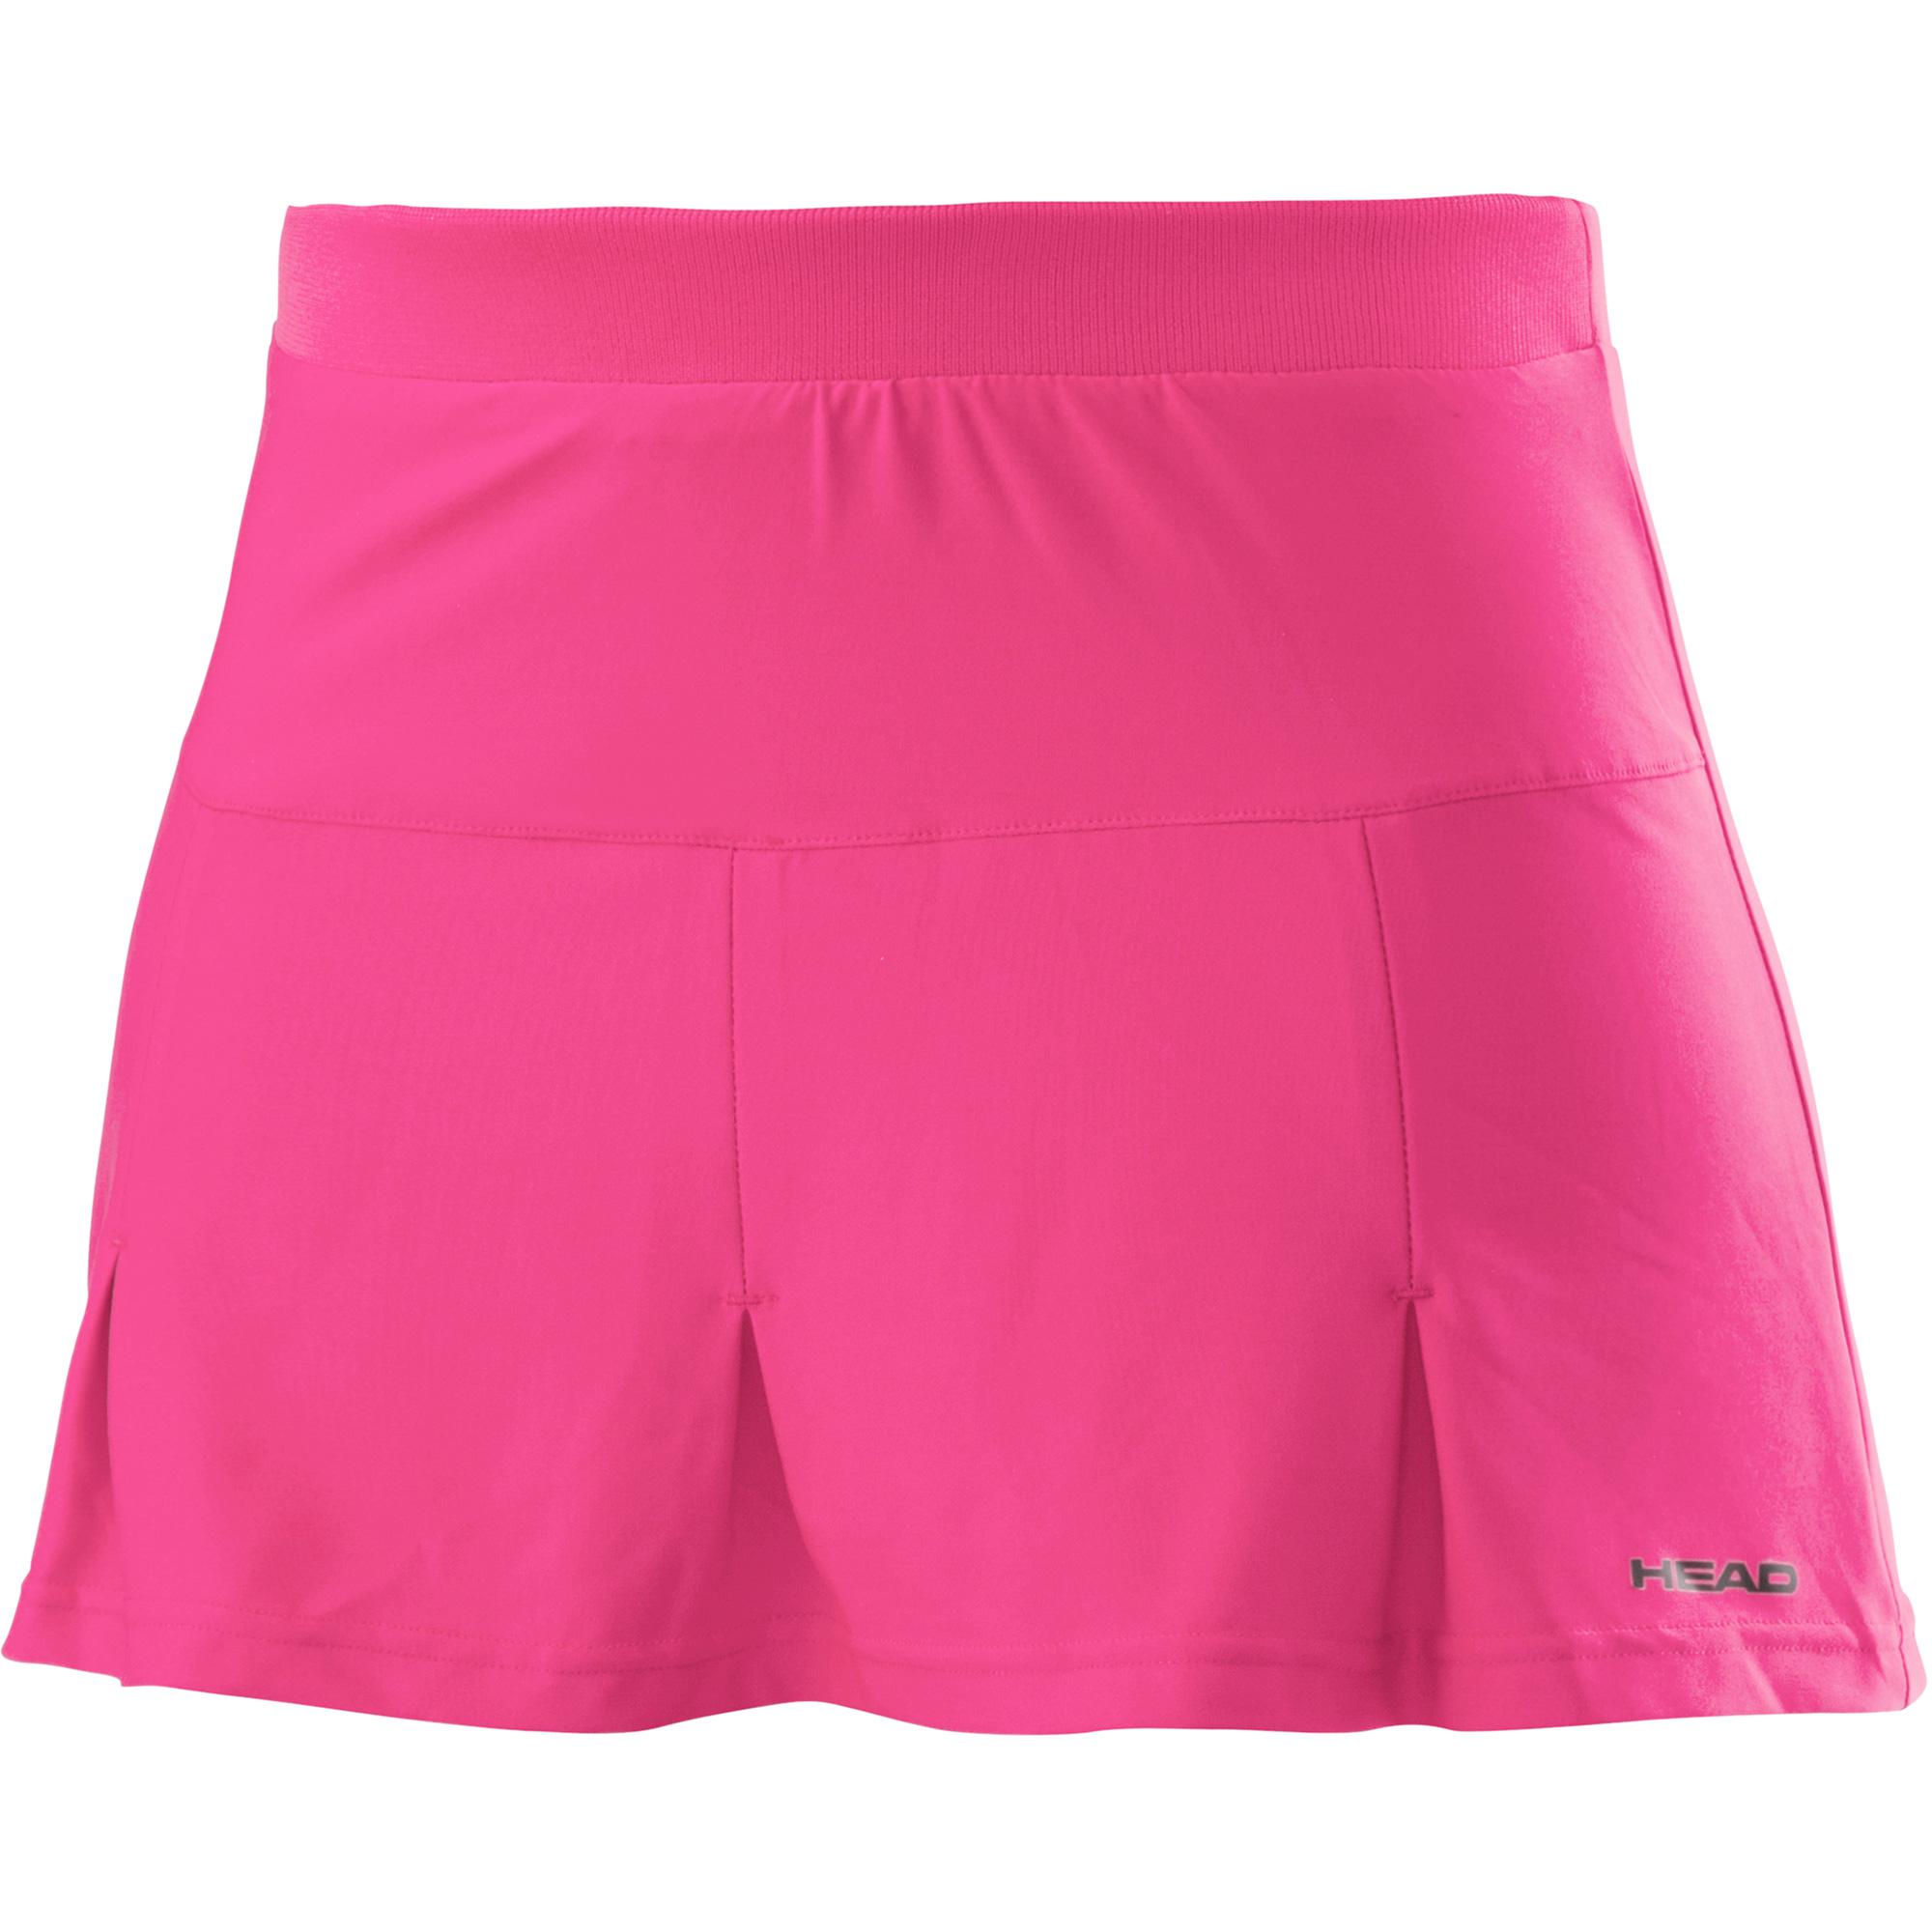 Head Womens Club Basic Skort - Pink - Tennisnuts.com